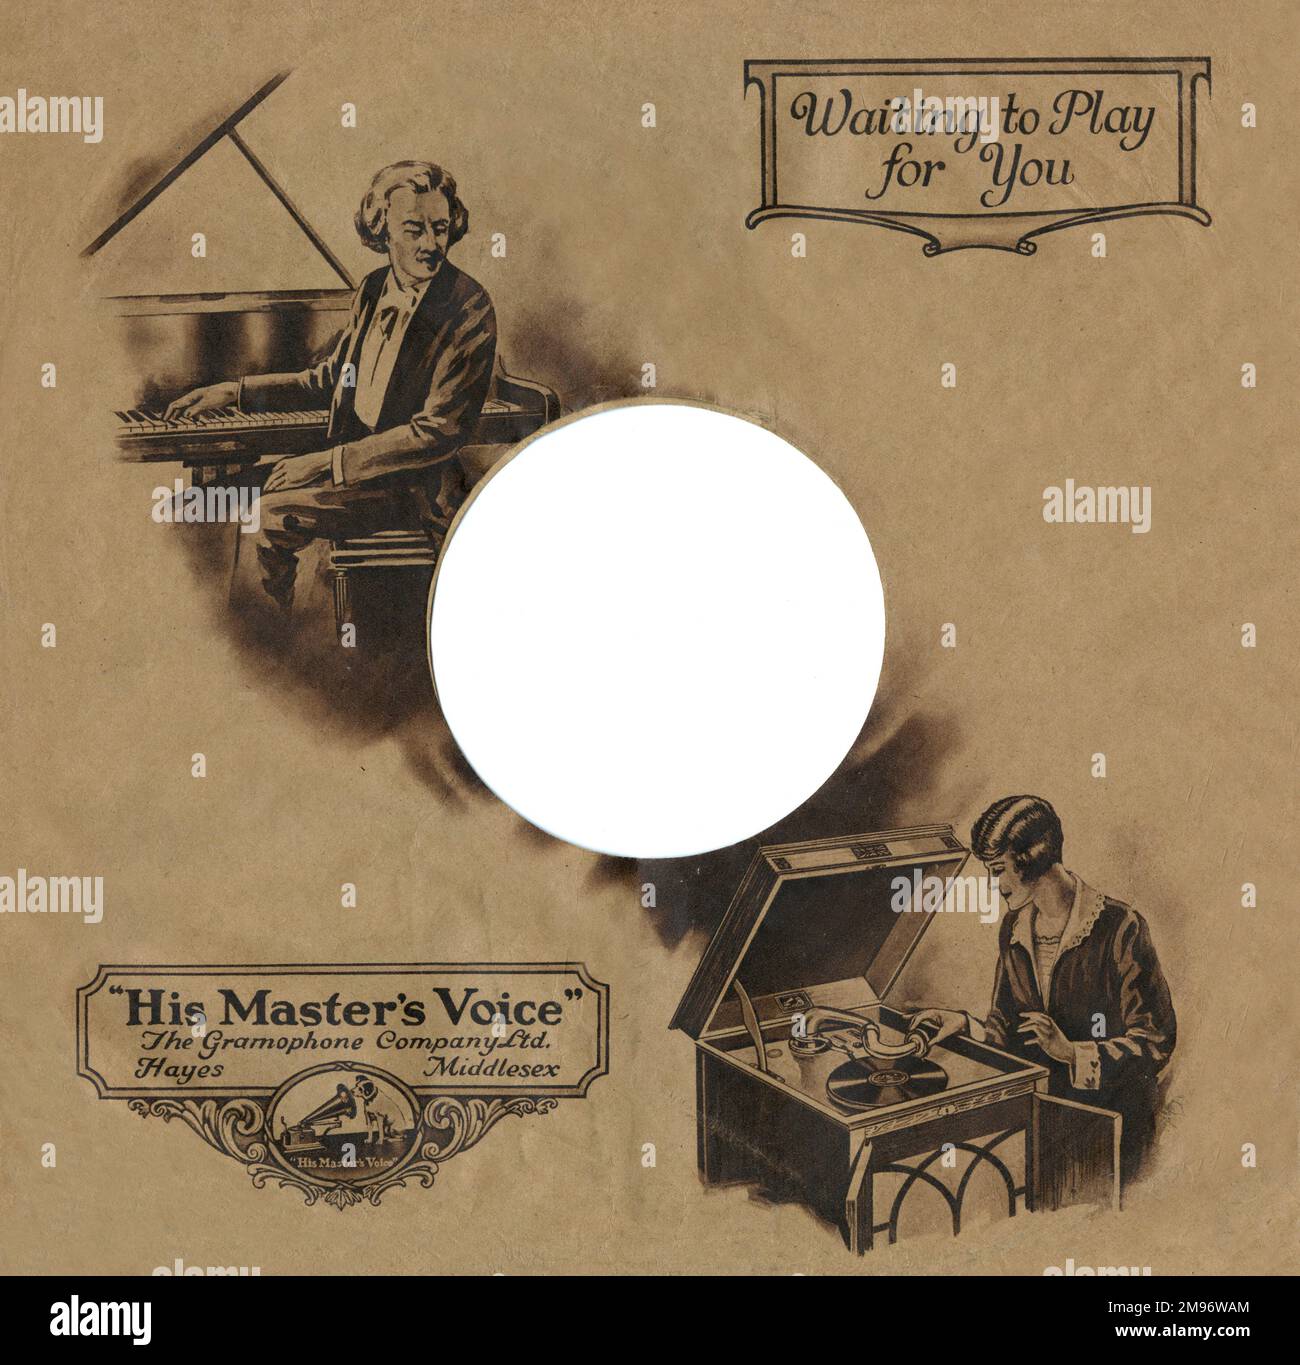 Pochette de disque pour le label de musique sa voix de maître, avec une  illustration montrant une dame sur le point de jouer un disque sur son  gramophone. Elle écoutera sans doute